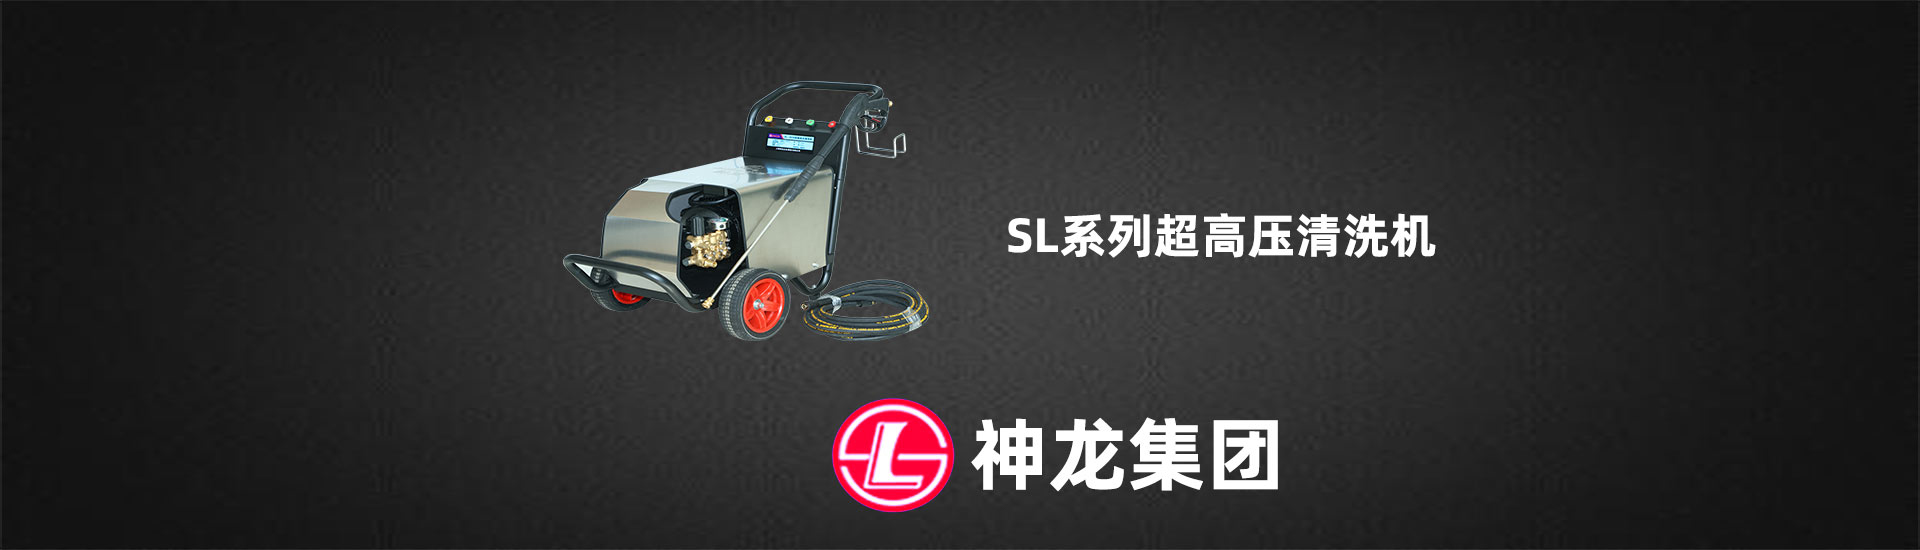 SL-1018/SL-1220型超高压大流量清洗机-第一张幻灯大图